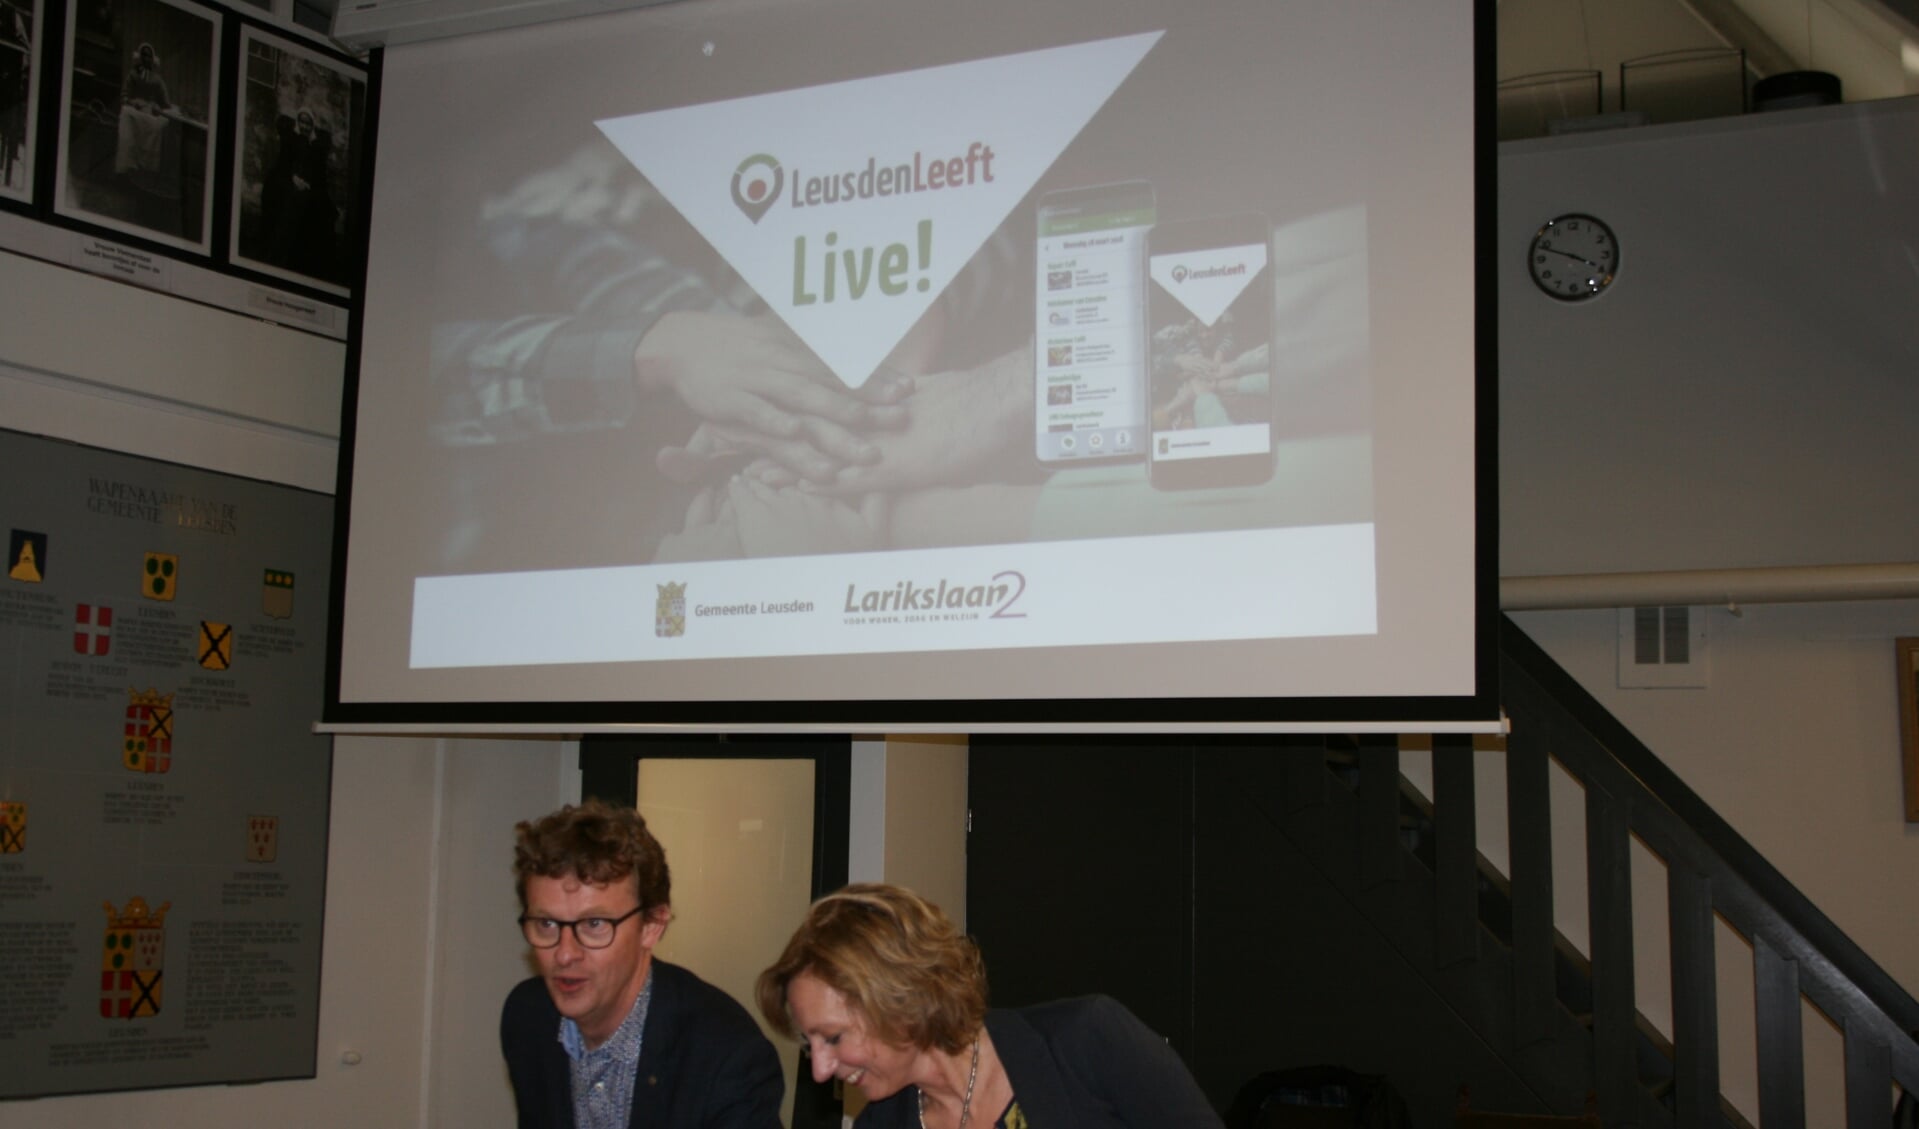 Jan Overweg (wethouder) en Hester Frank (directeur Larikslaan2) demonstreren app ‘LeusdenLeeft’.